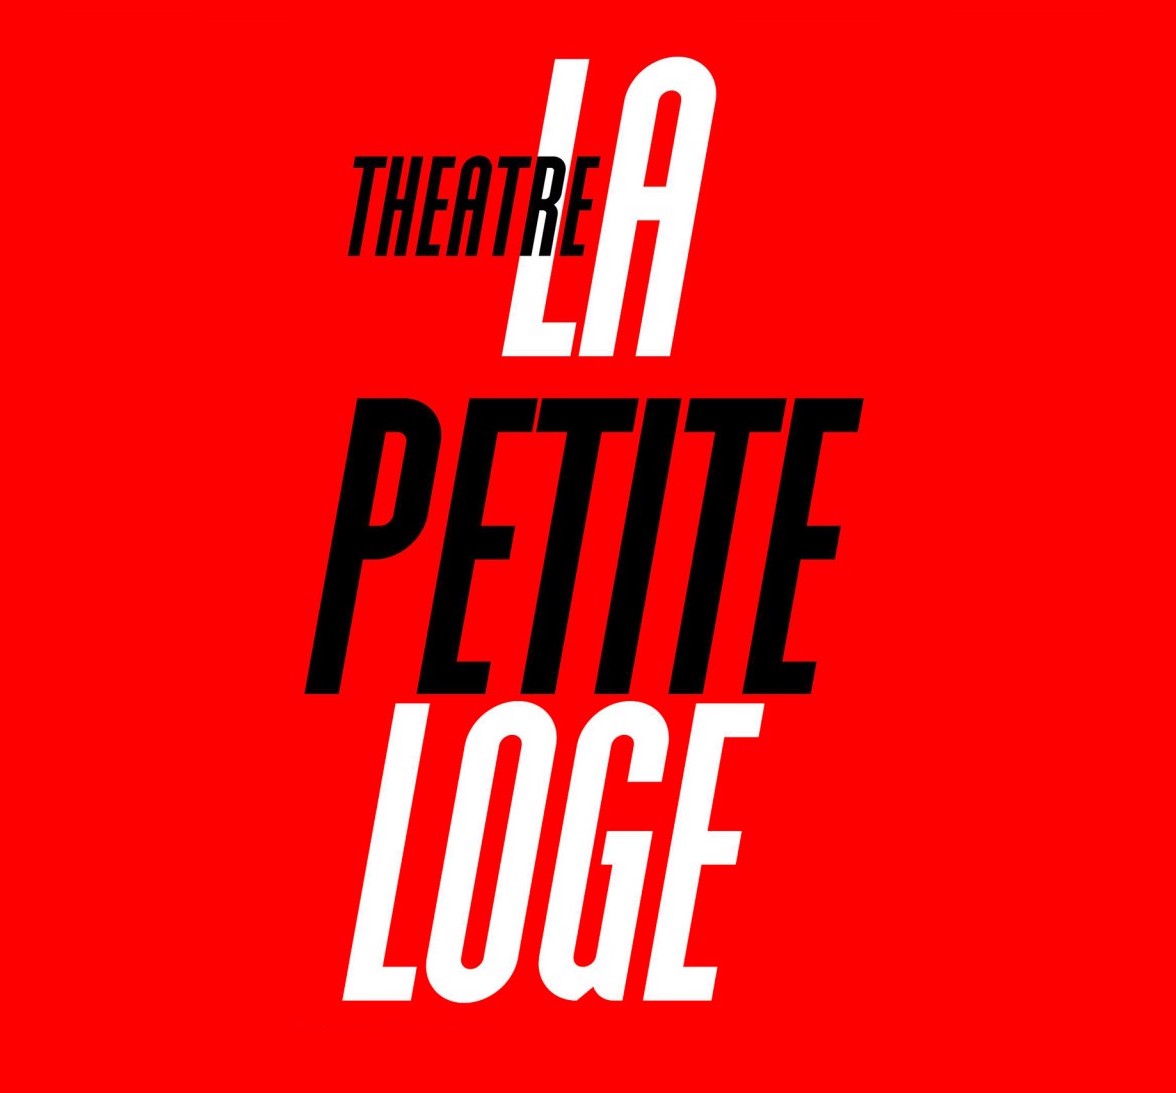 Théâtre La Petite Loge